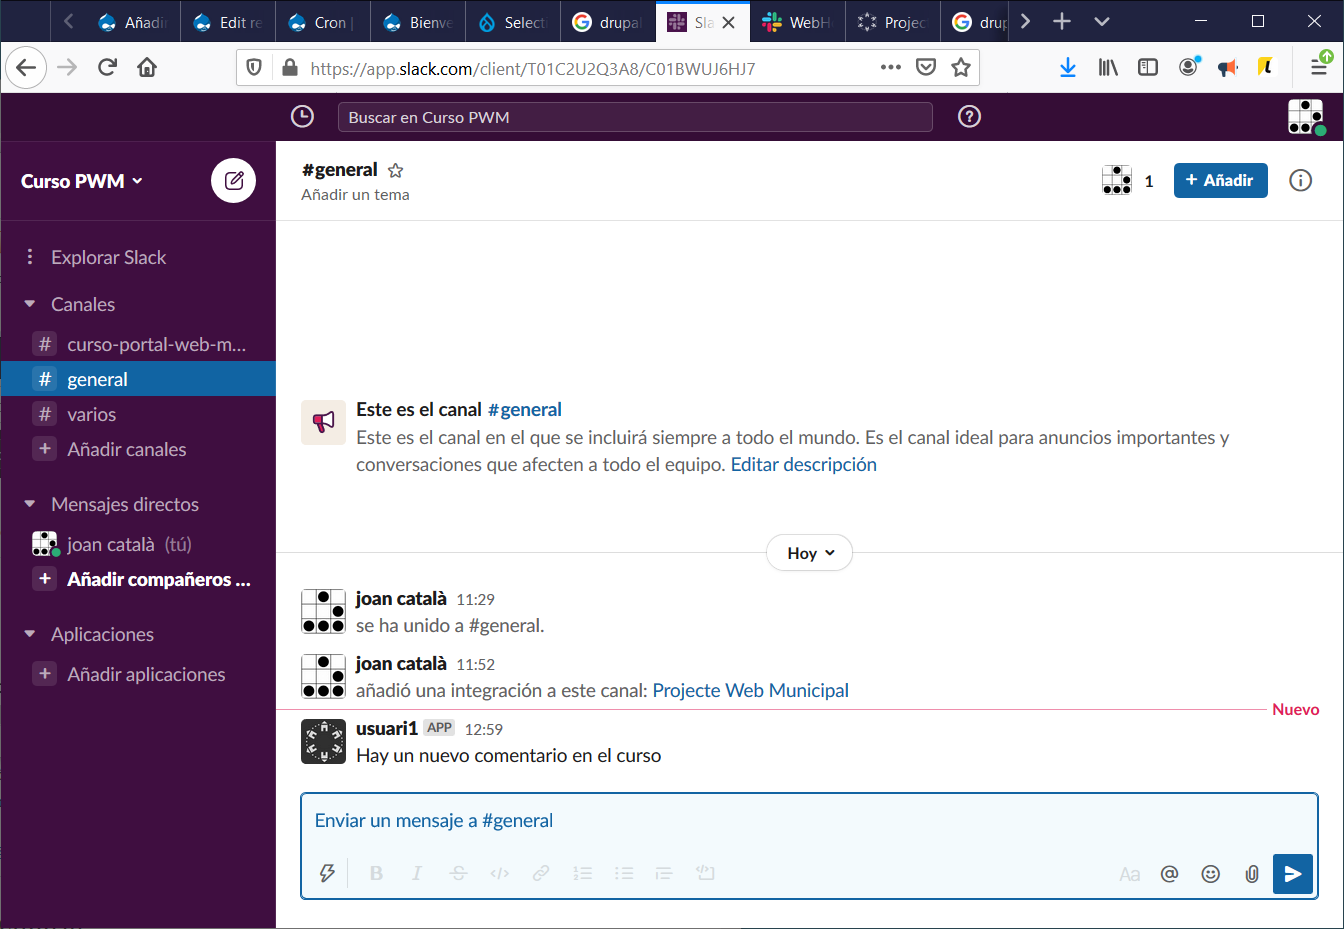 Integrant Drupal i Slack per a estar notificats d'events i canvis a la web